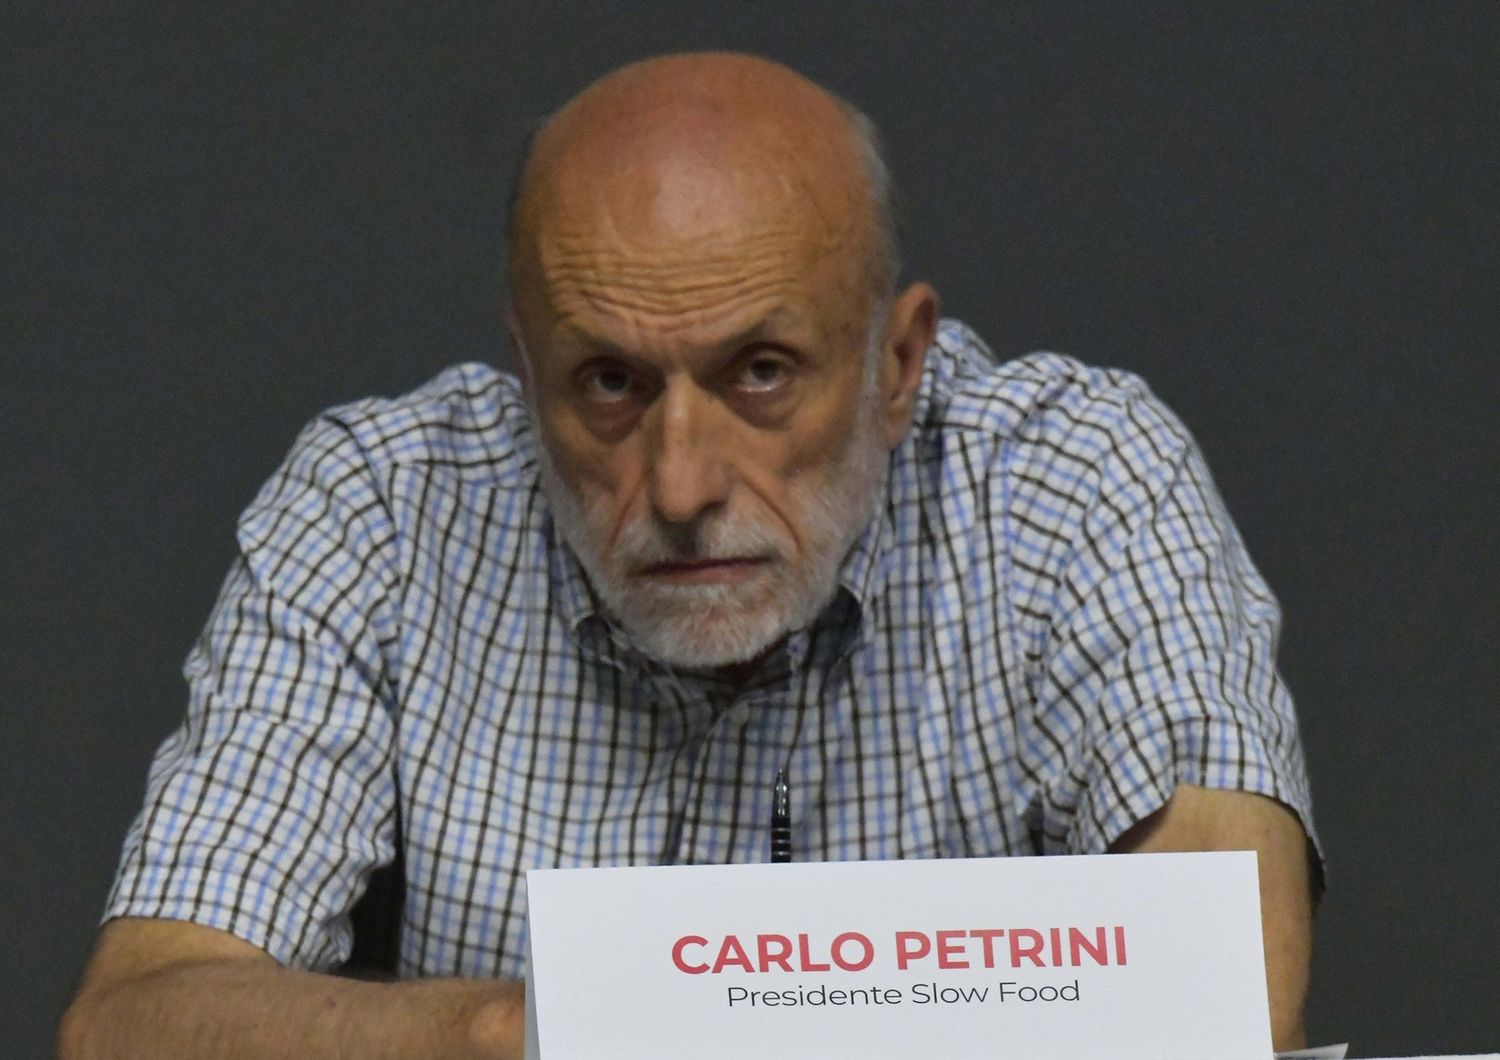 Carlo Petrini